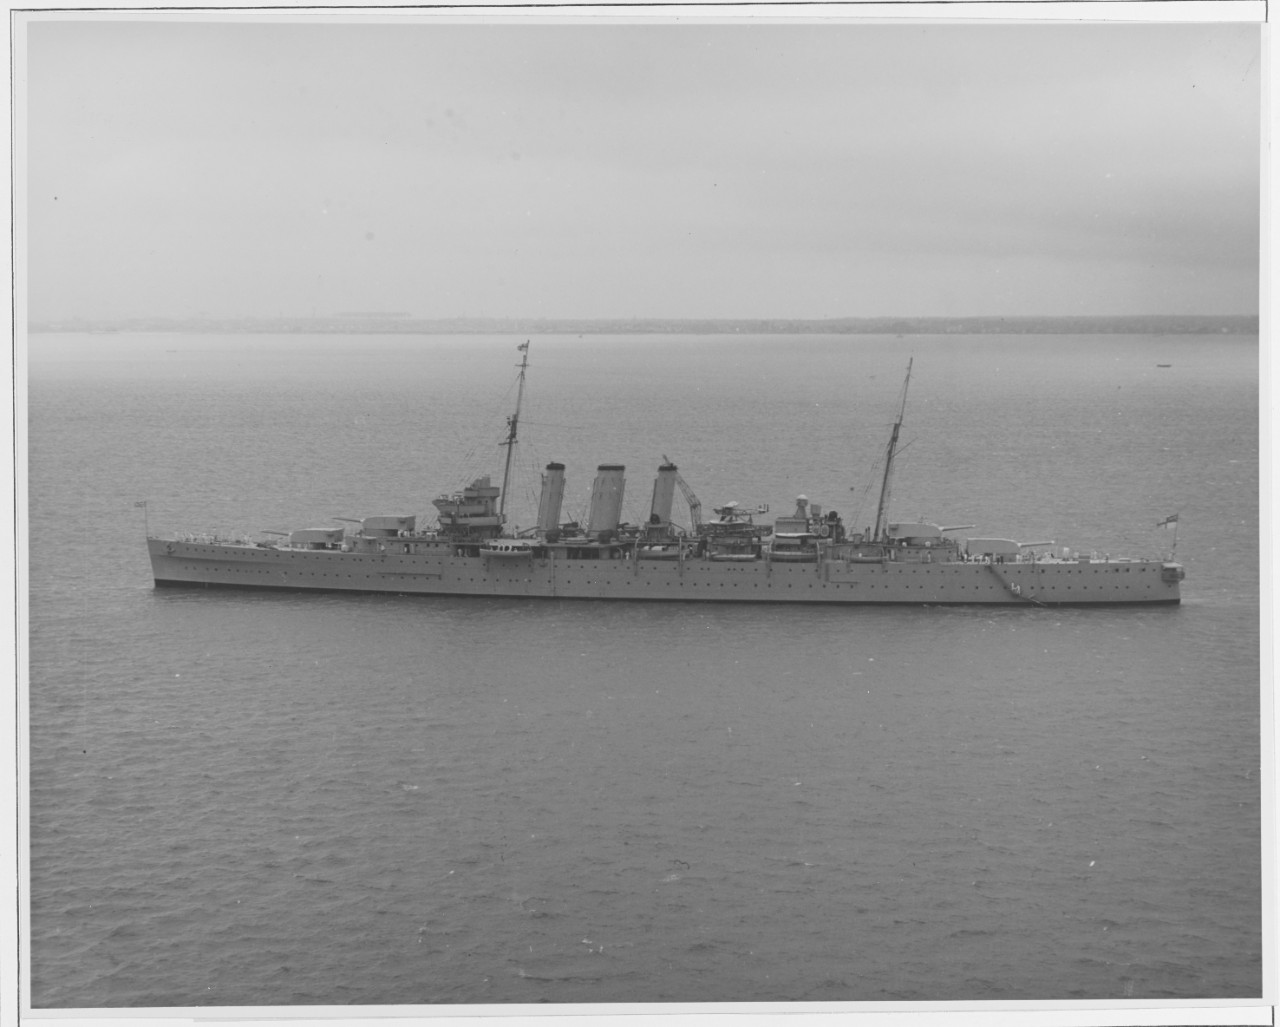 HMS NORFOLK (British cruiser, 1928)